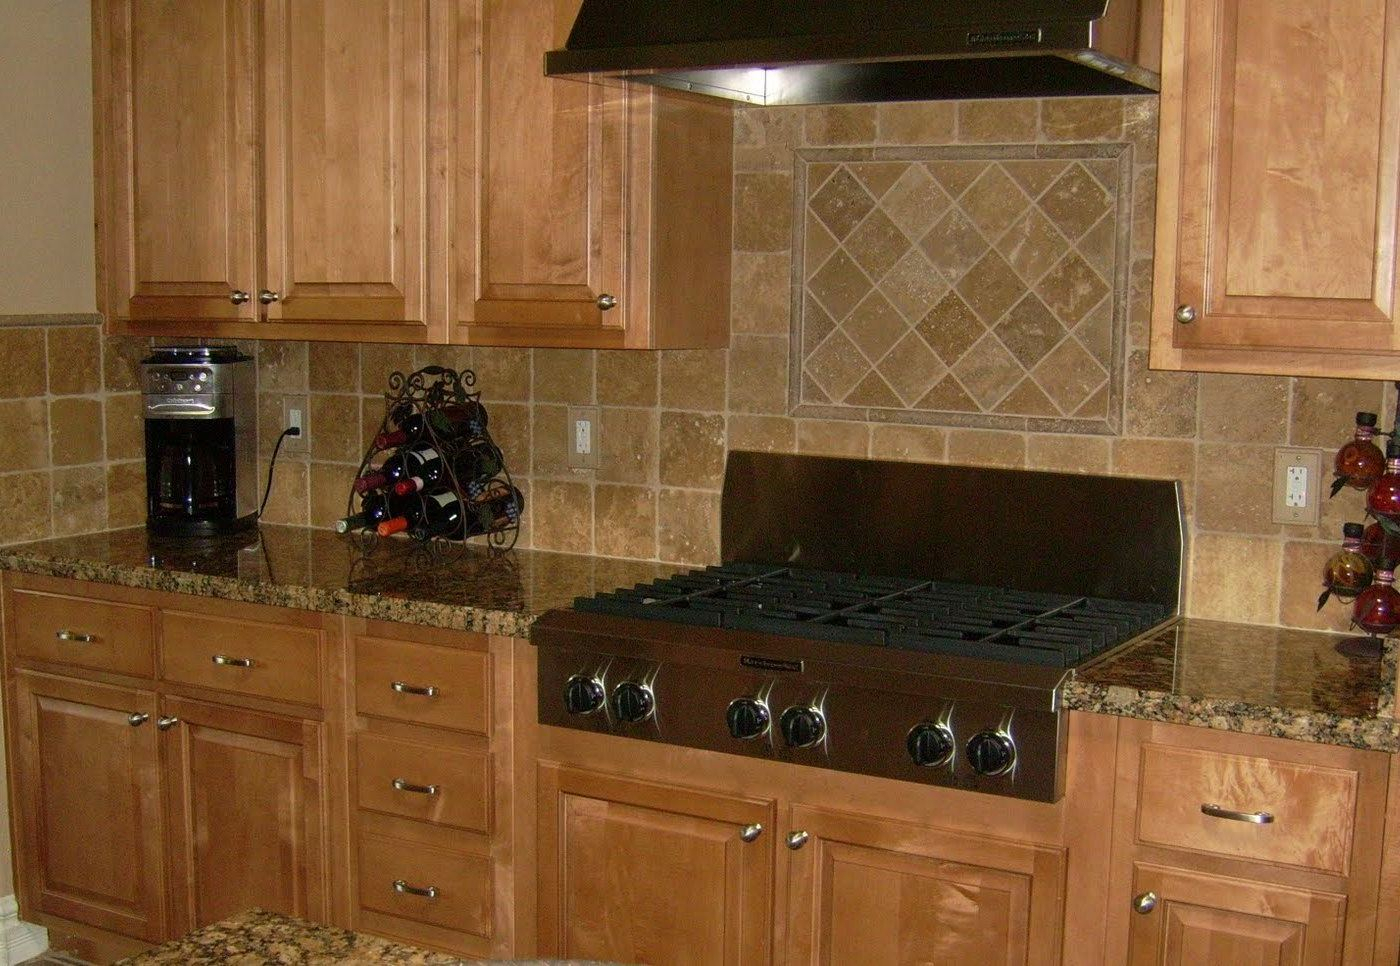 10 Stylish Backsplash Ideas With Black Granite Countertops backsplash pictures for granite countertops 004 wlogo white kitchen 2024